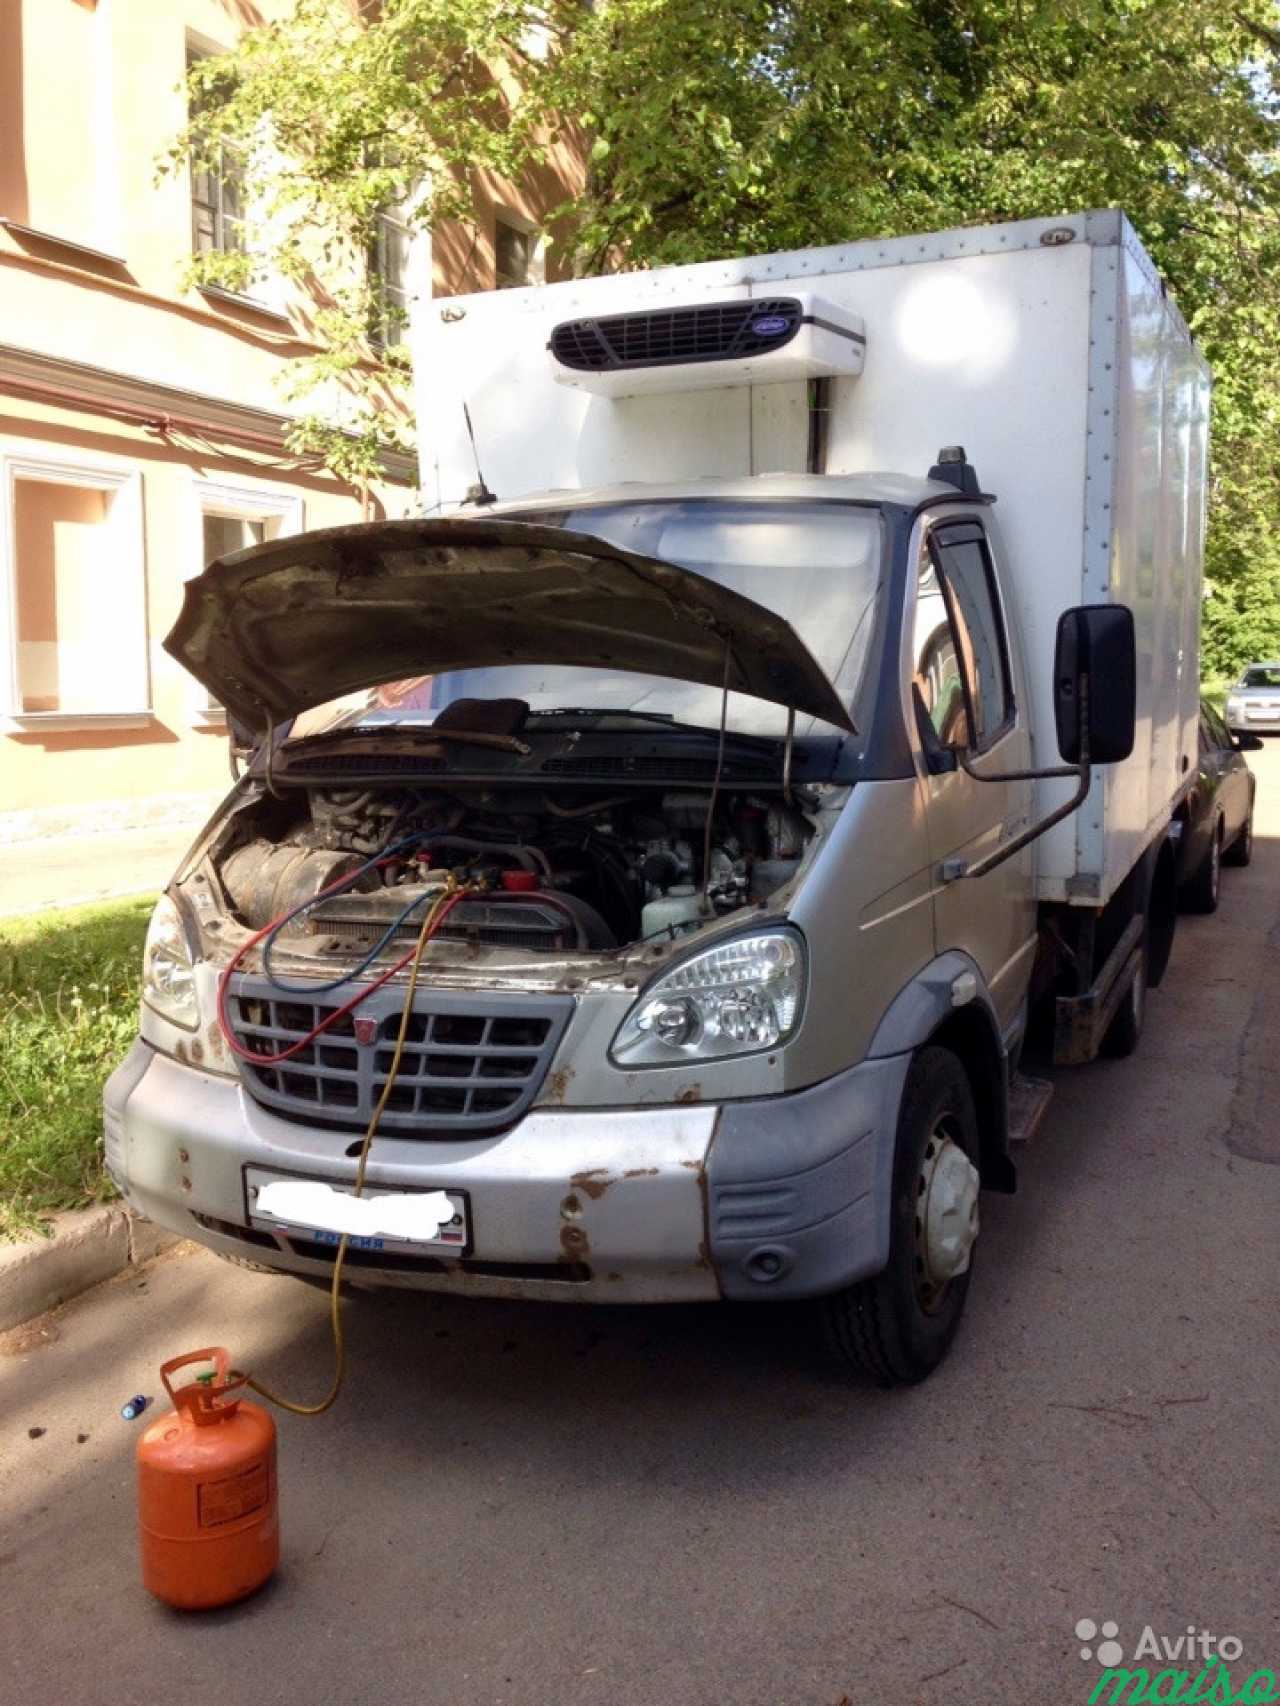 Заправка кондиционеров (авто) ремонт холодильников в Санкт-Петербурге. Фото 4